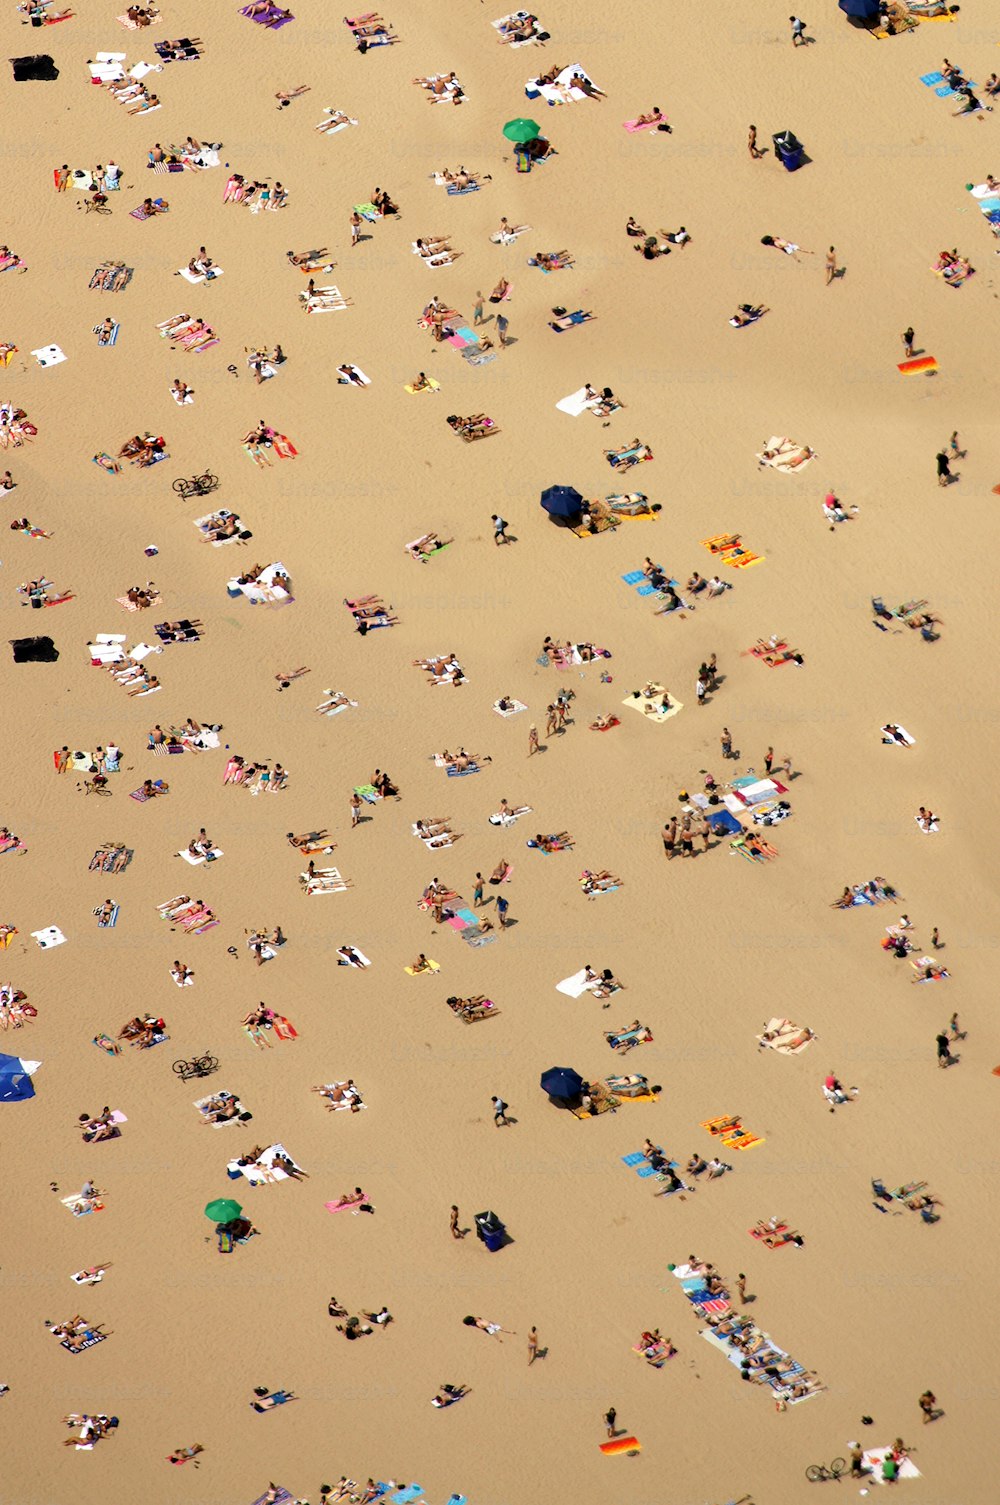 un grand groupe de personnes allongées au sommet d’une plage de sable